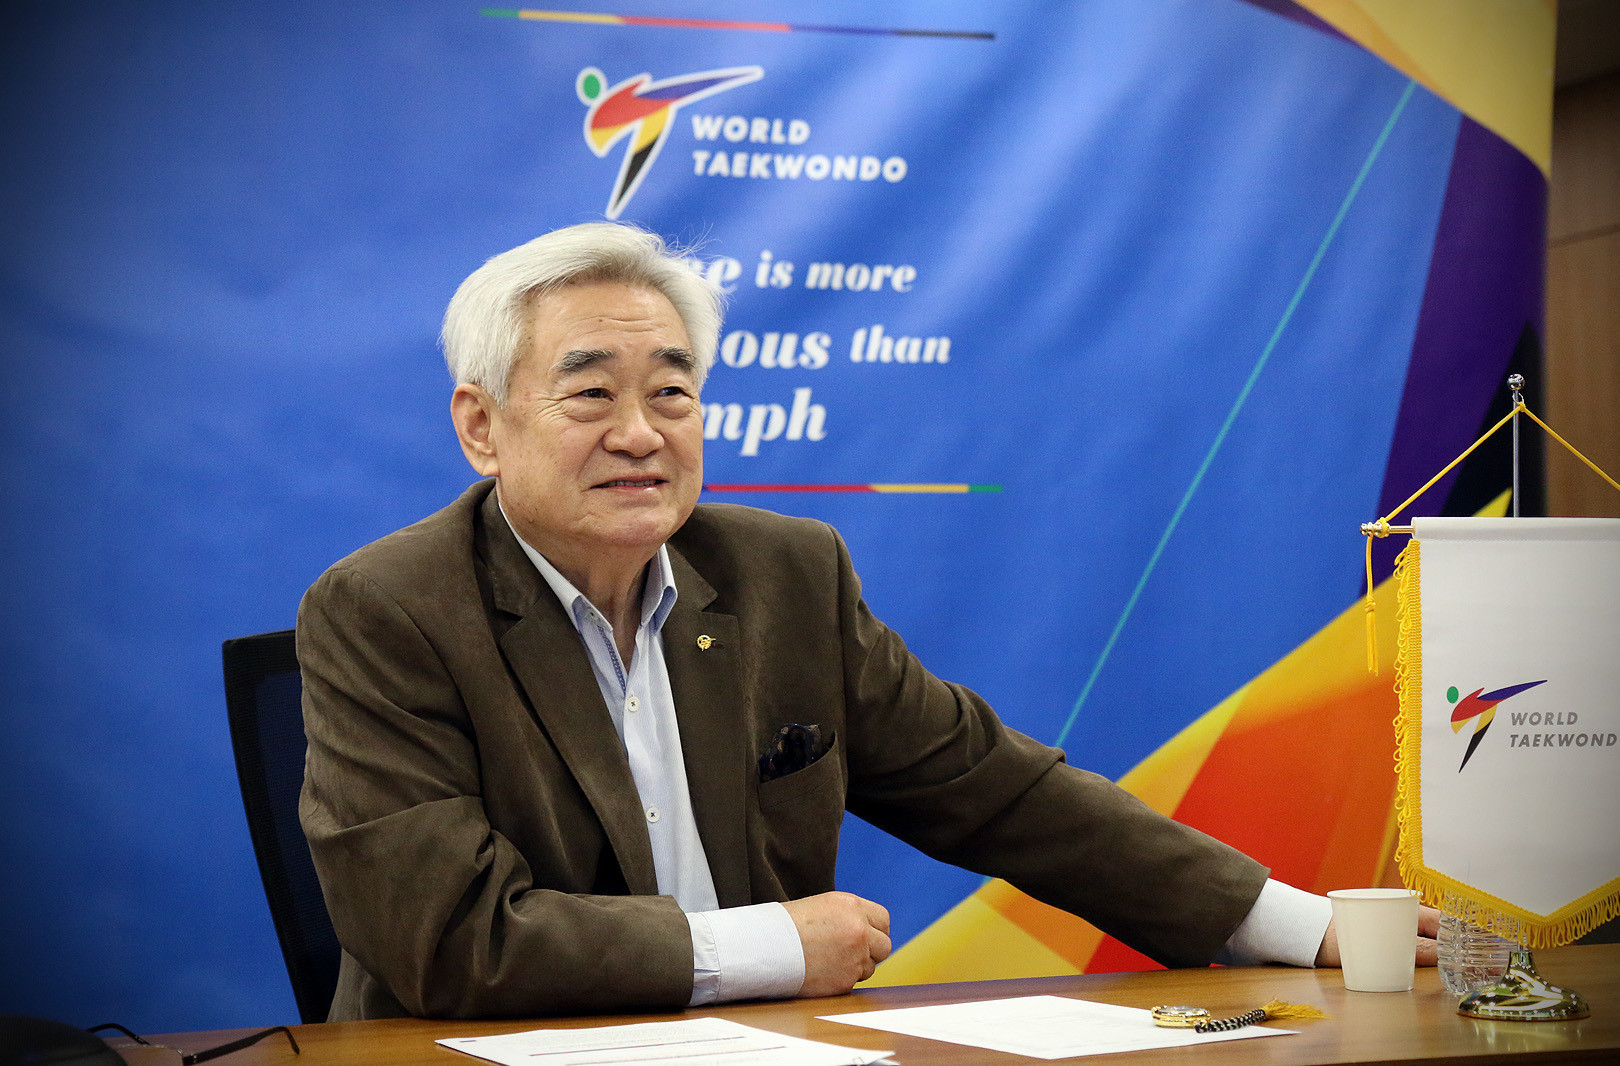 Foto: Chungwon Choue hat derzeit eine vierte Amtszeit als World Taekwondo President © World Taekwondo